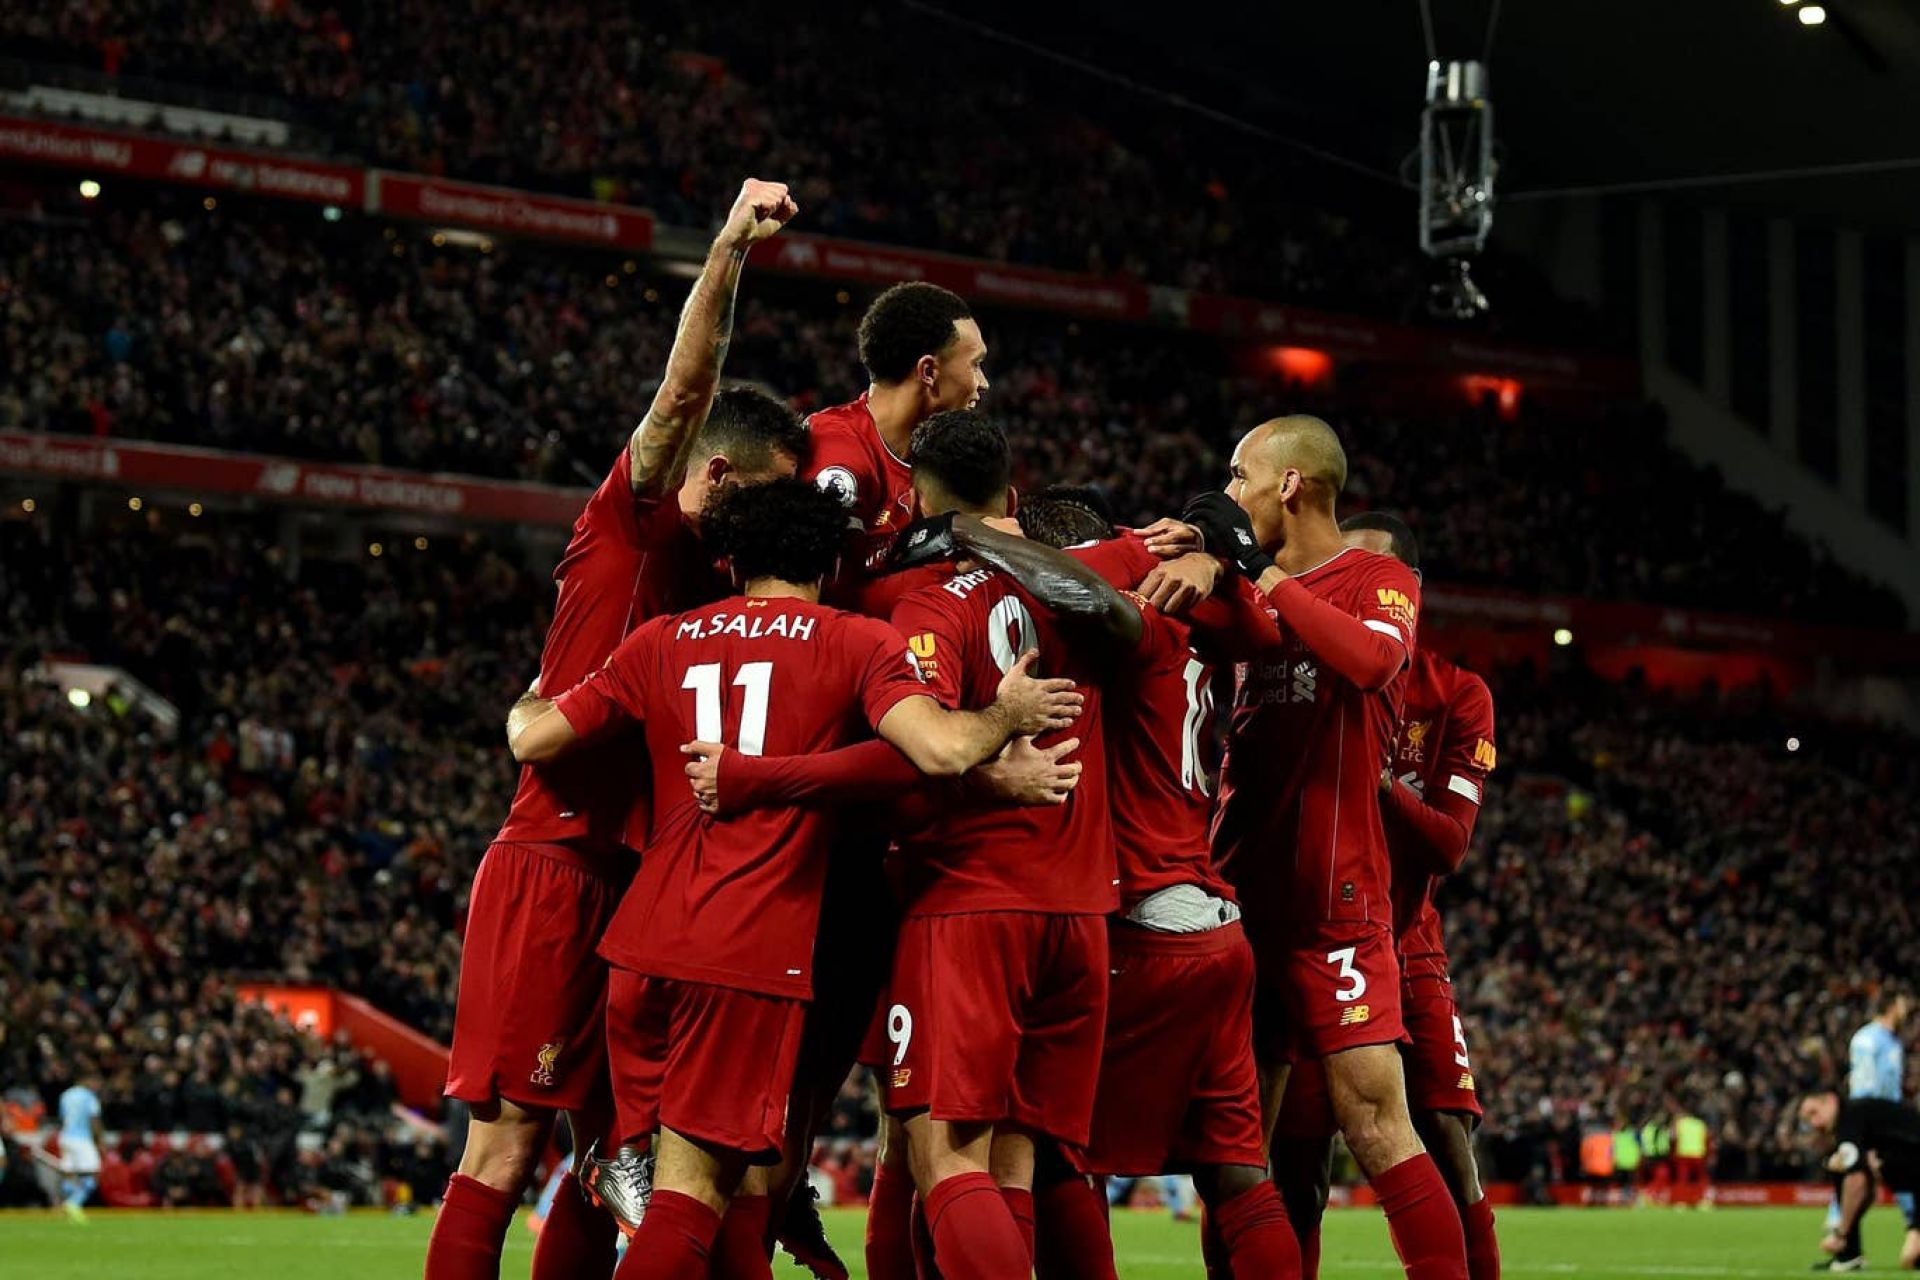 Στο +9 και το όνειρο συνεχίζεται | Liverpool 3-1 Manchester City: Match Review